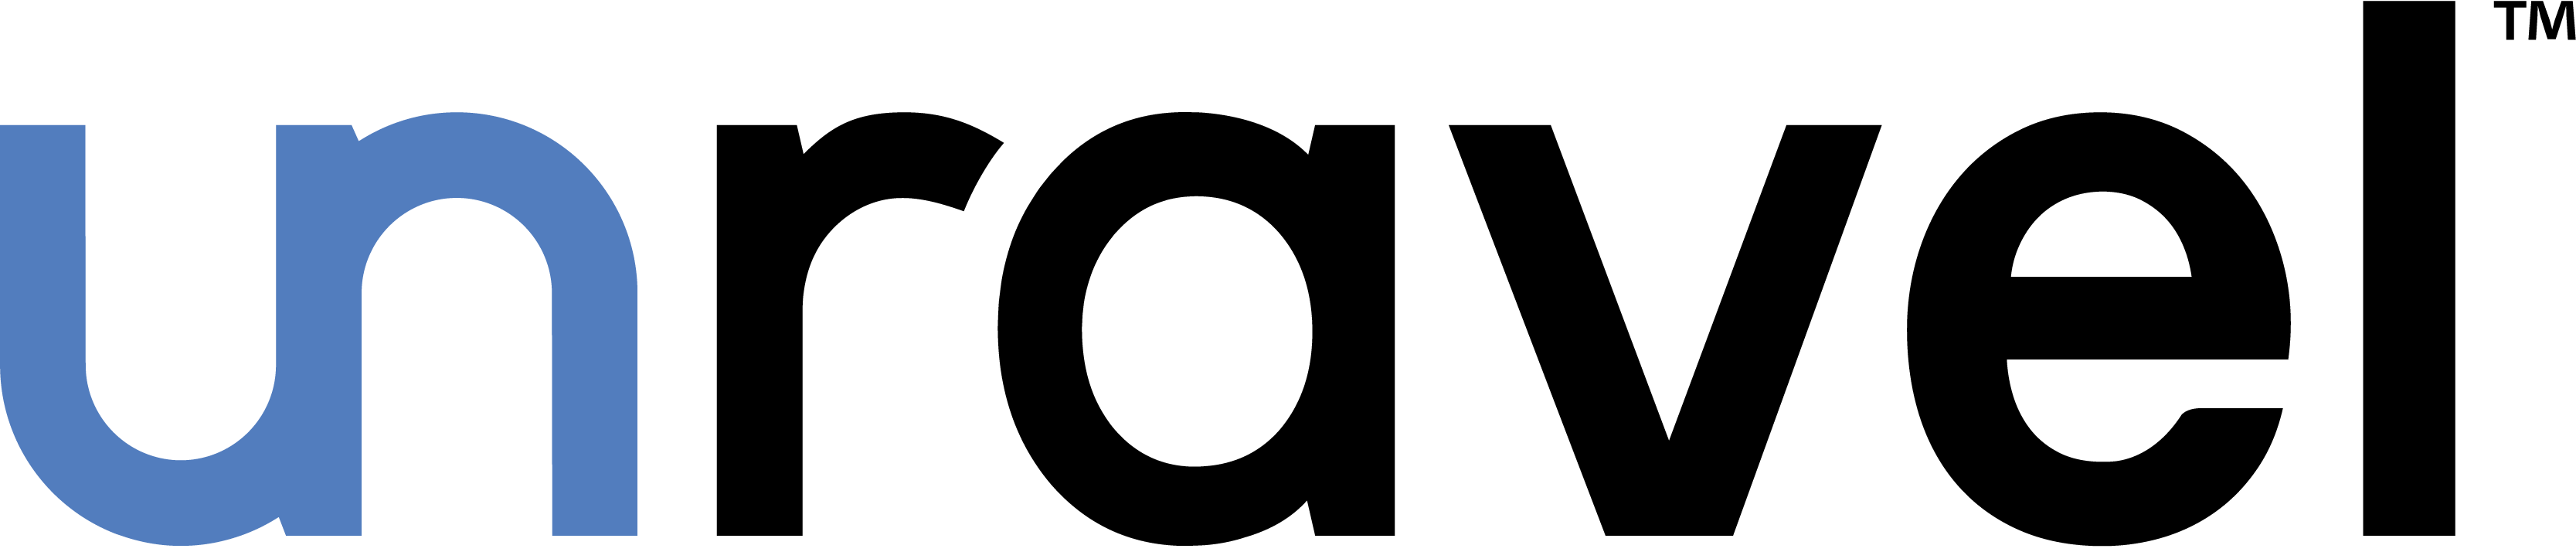 Uravel Data Logo